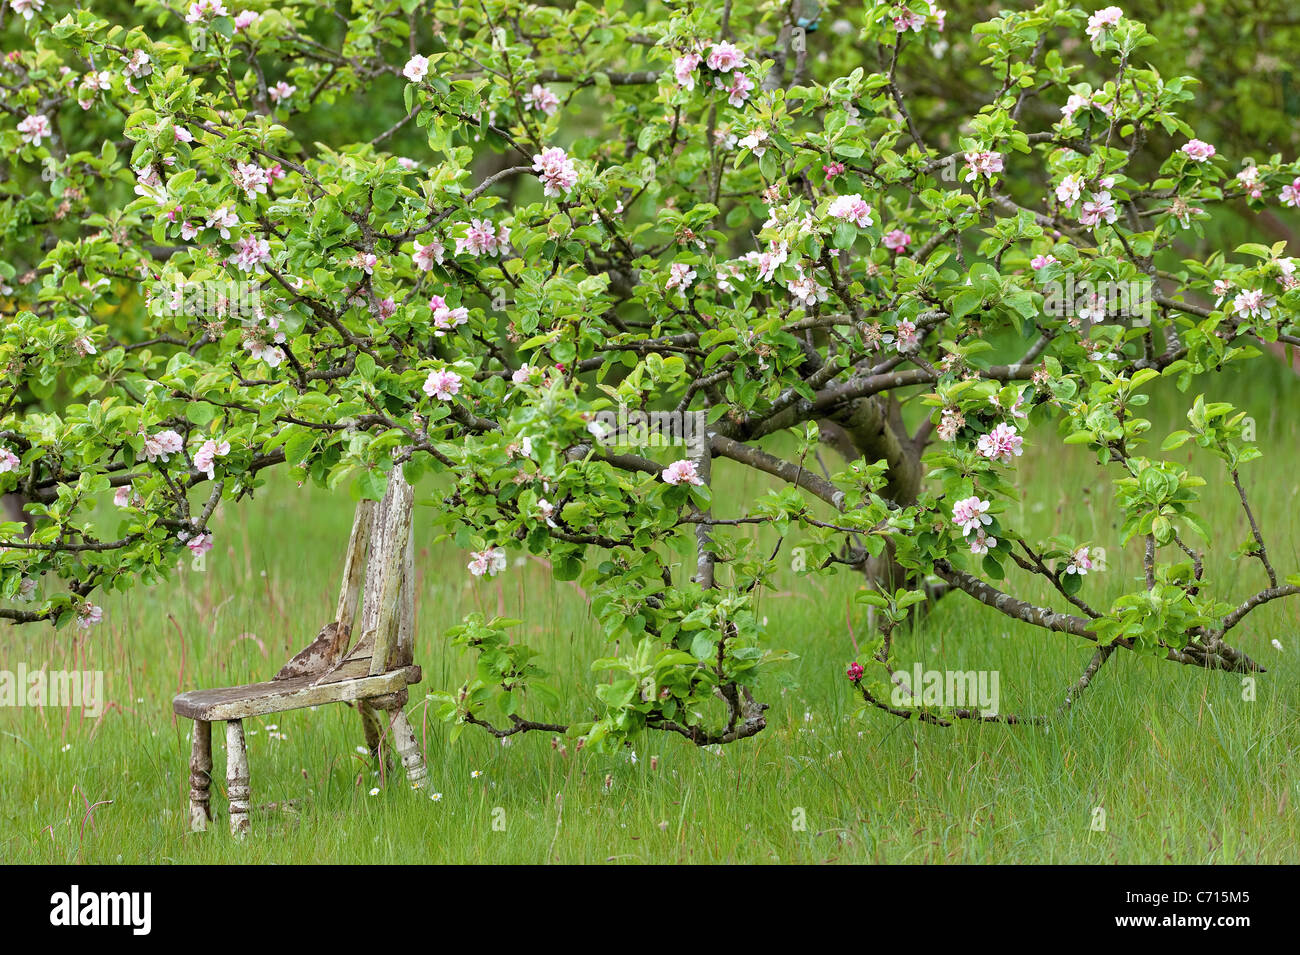 Apple tree está apoyada en una silla Foto de stock